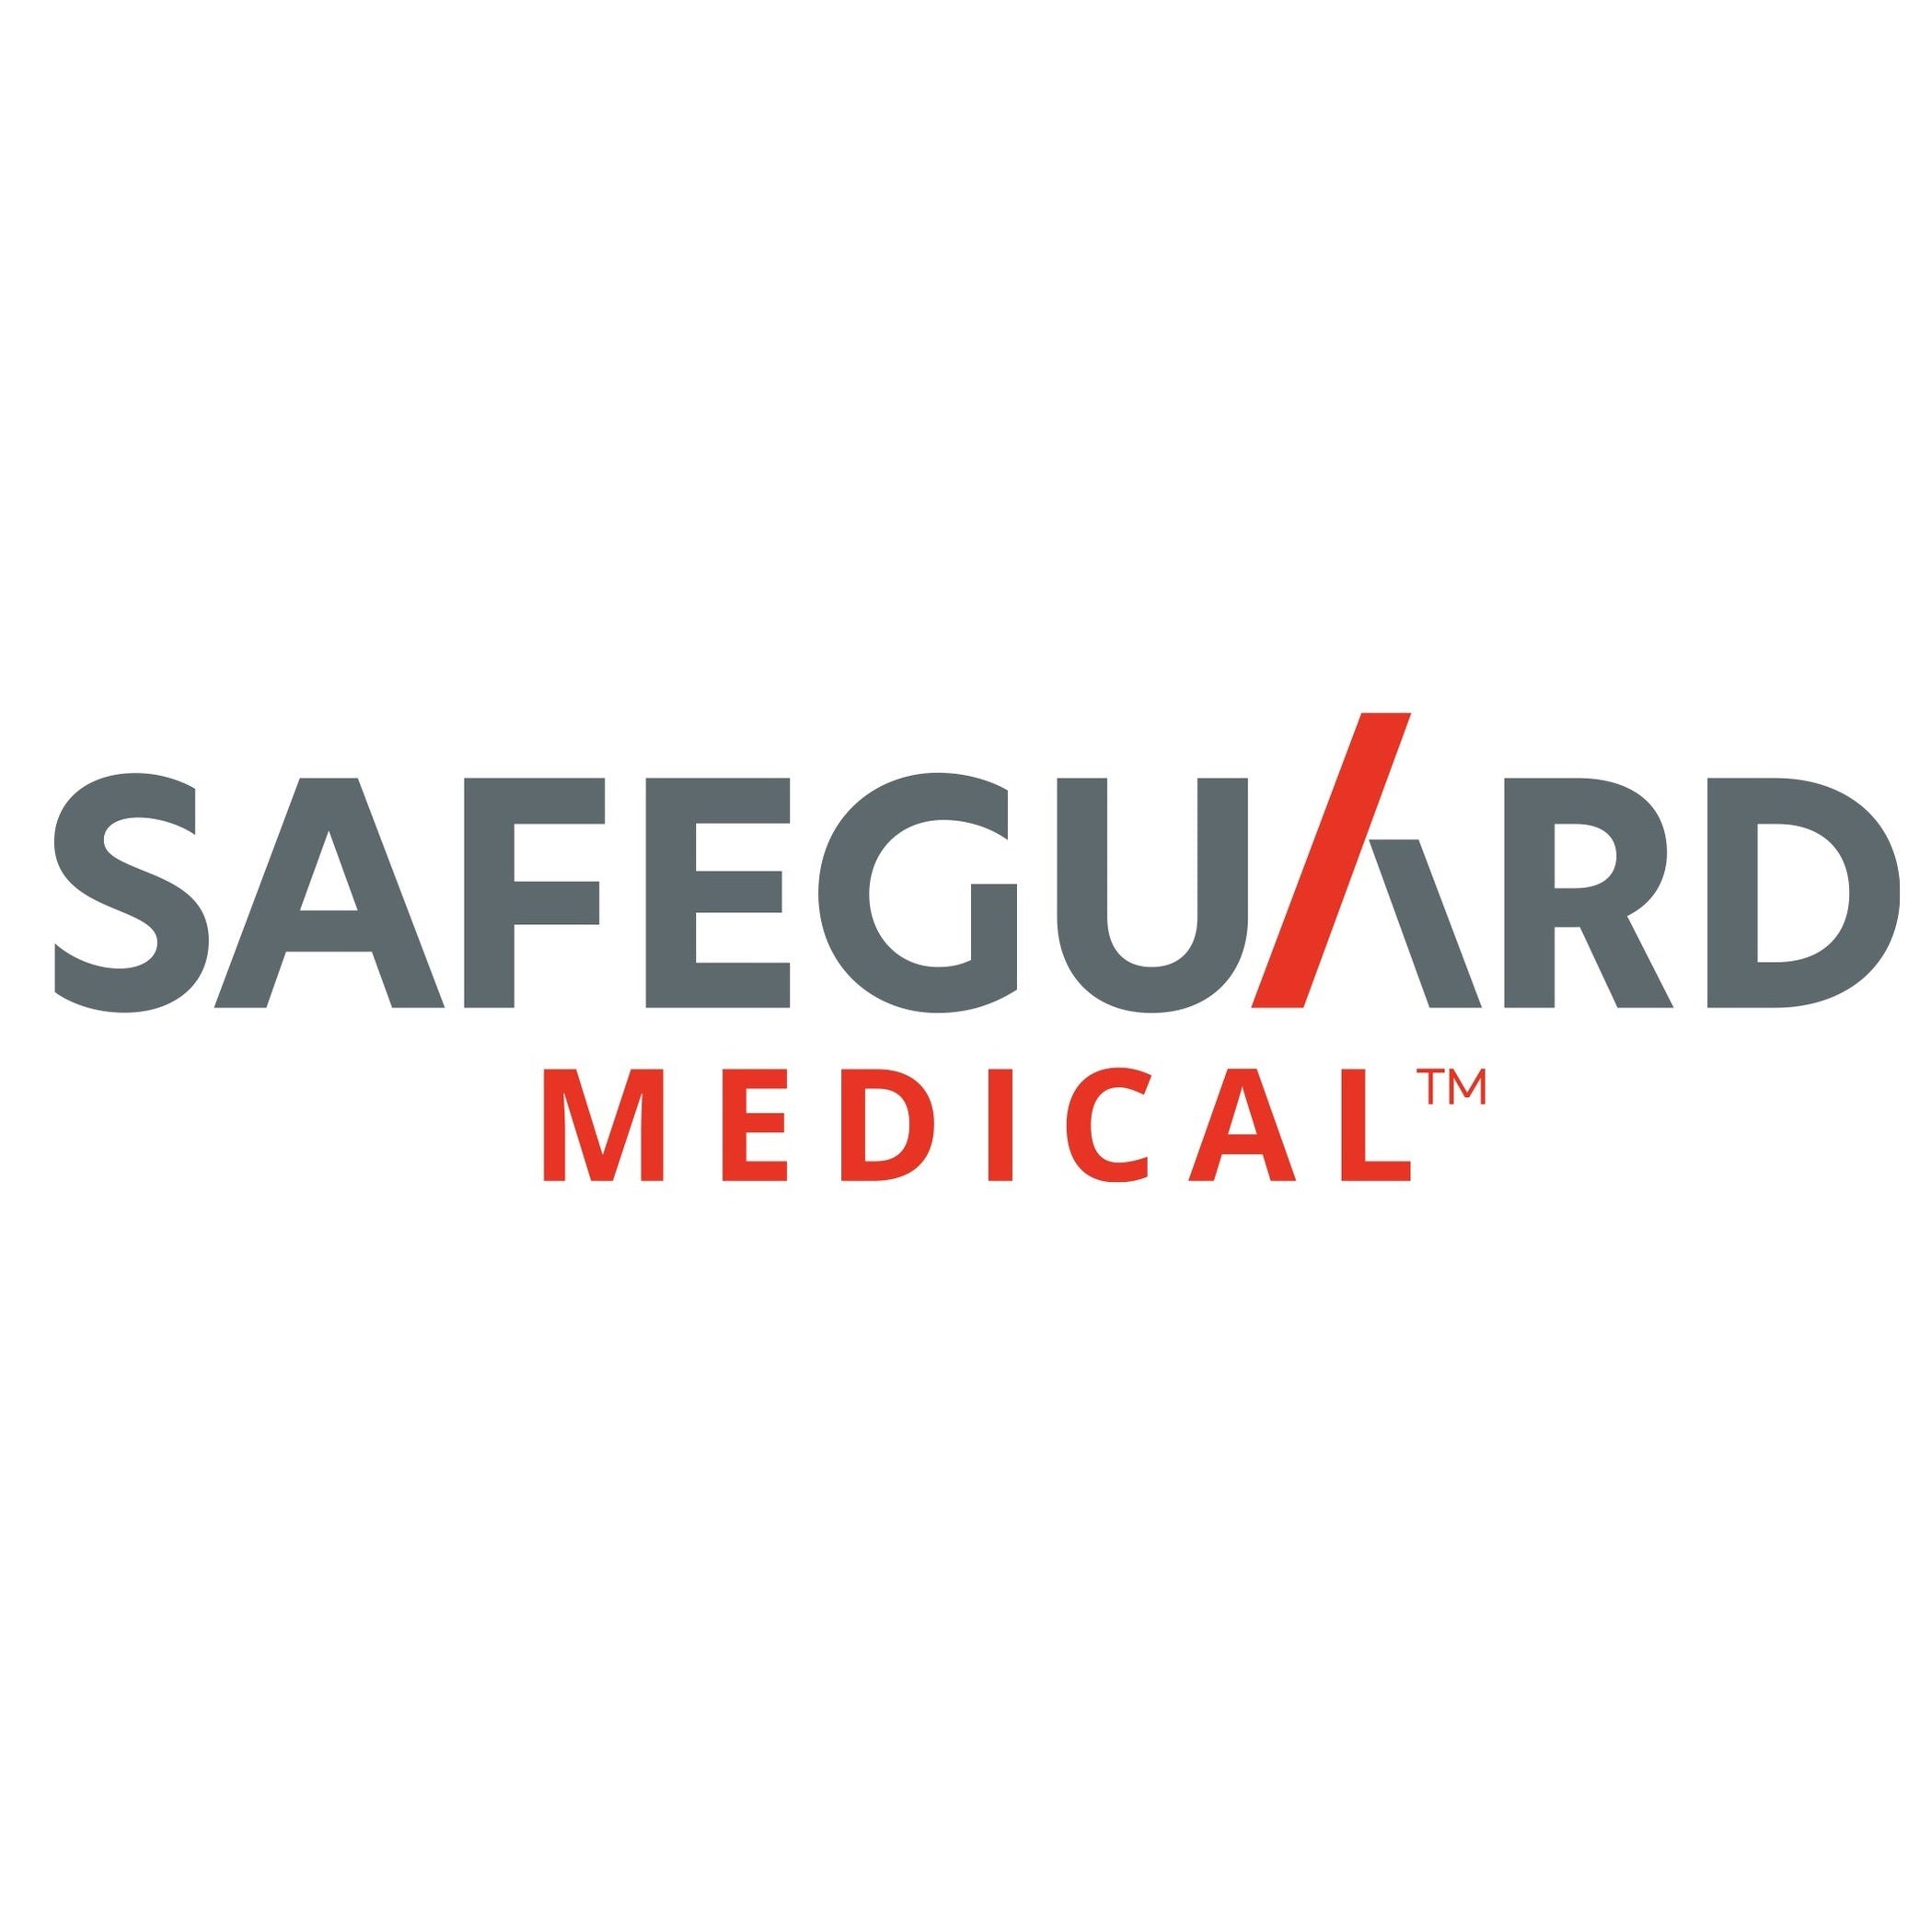 5. Safeguard Medical